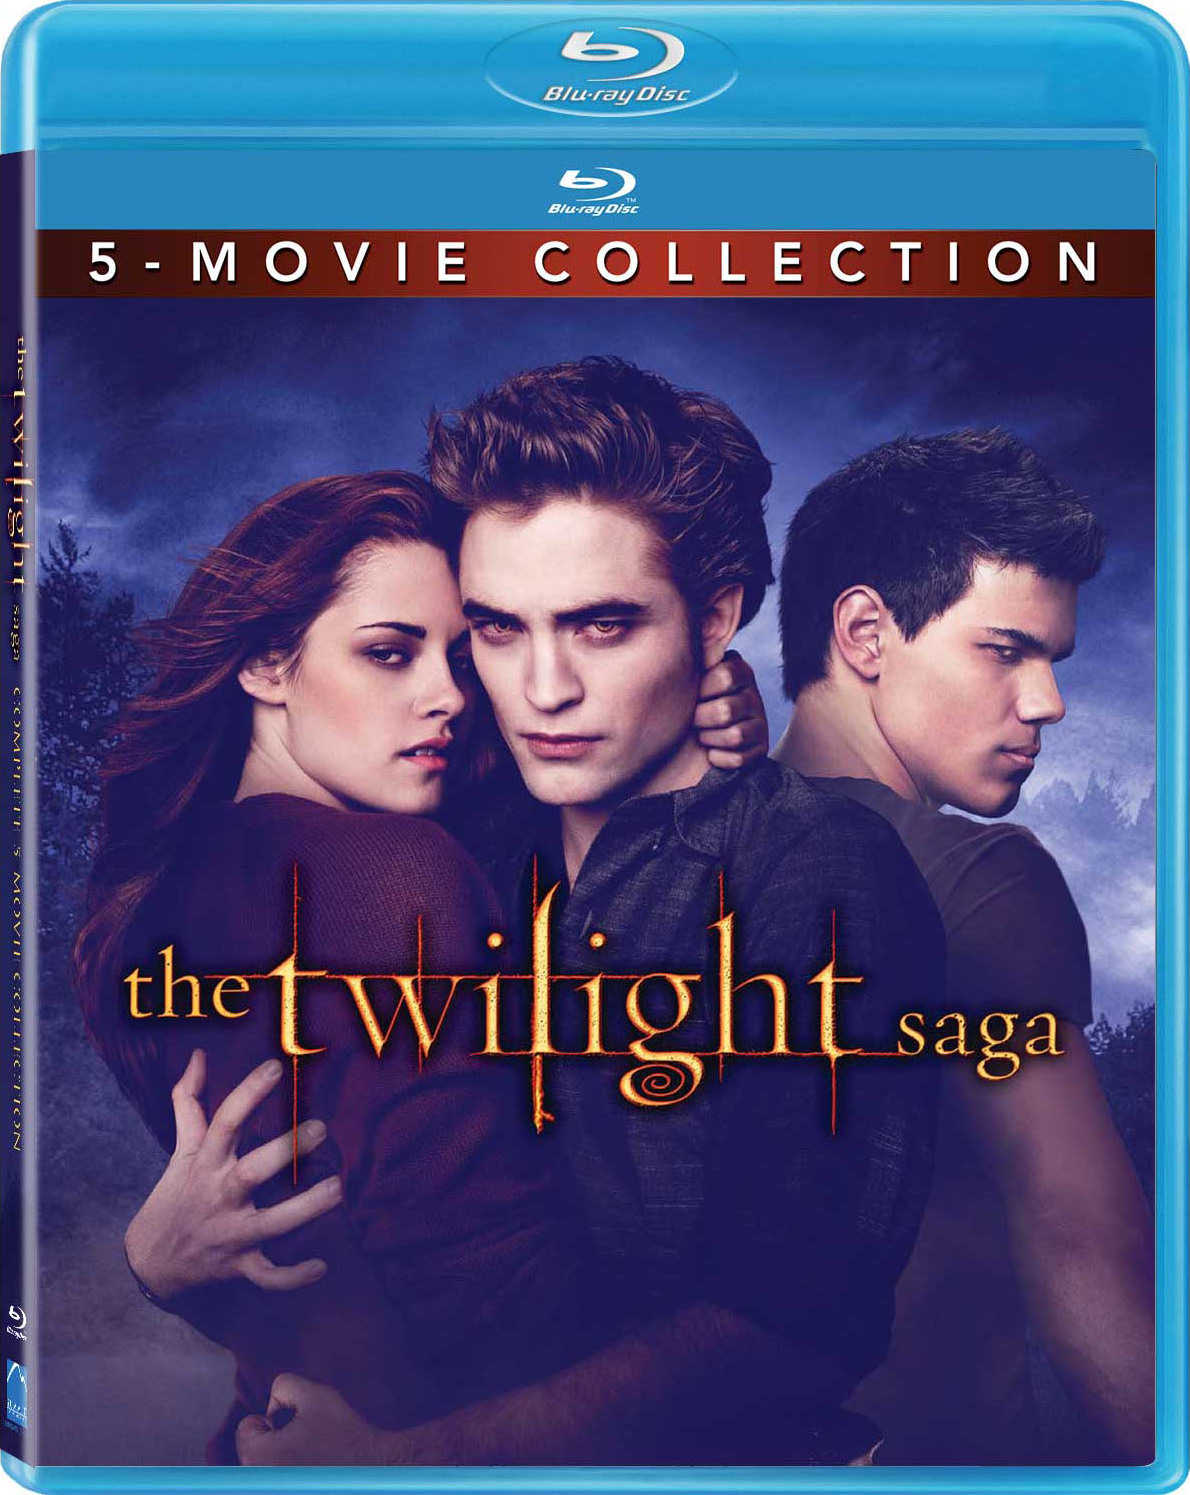 The Twilight Saga: 5-Movie Collection (2008-2012) La Saga Crepúsculo: Colección de 5 Películas (2008-2012) [AC3 5.1 + SUP] [Blu Ray-Rip] [GOOGLEDRIVE*] 261373_front